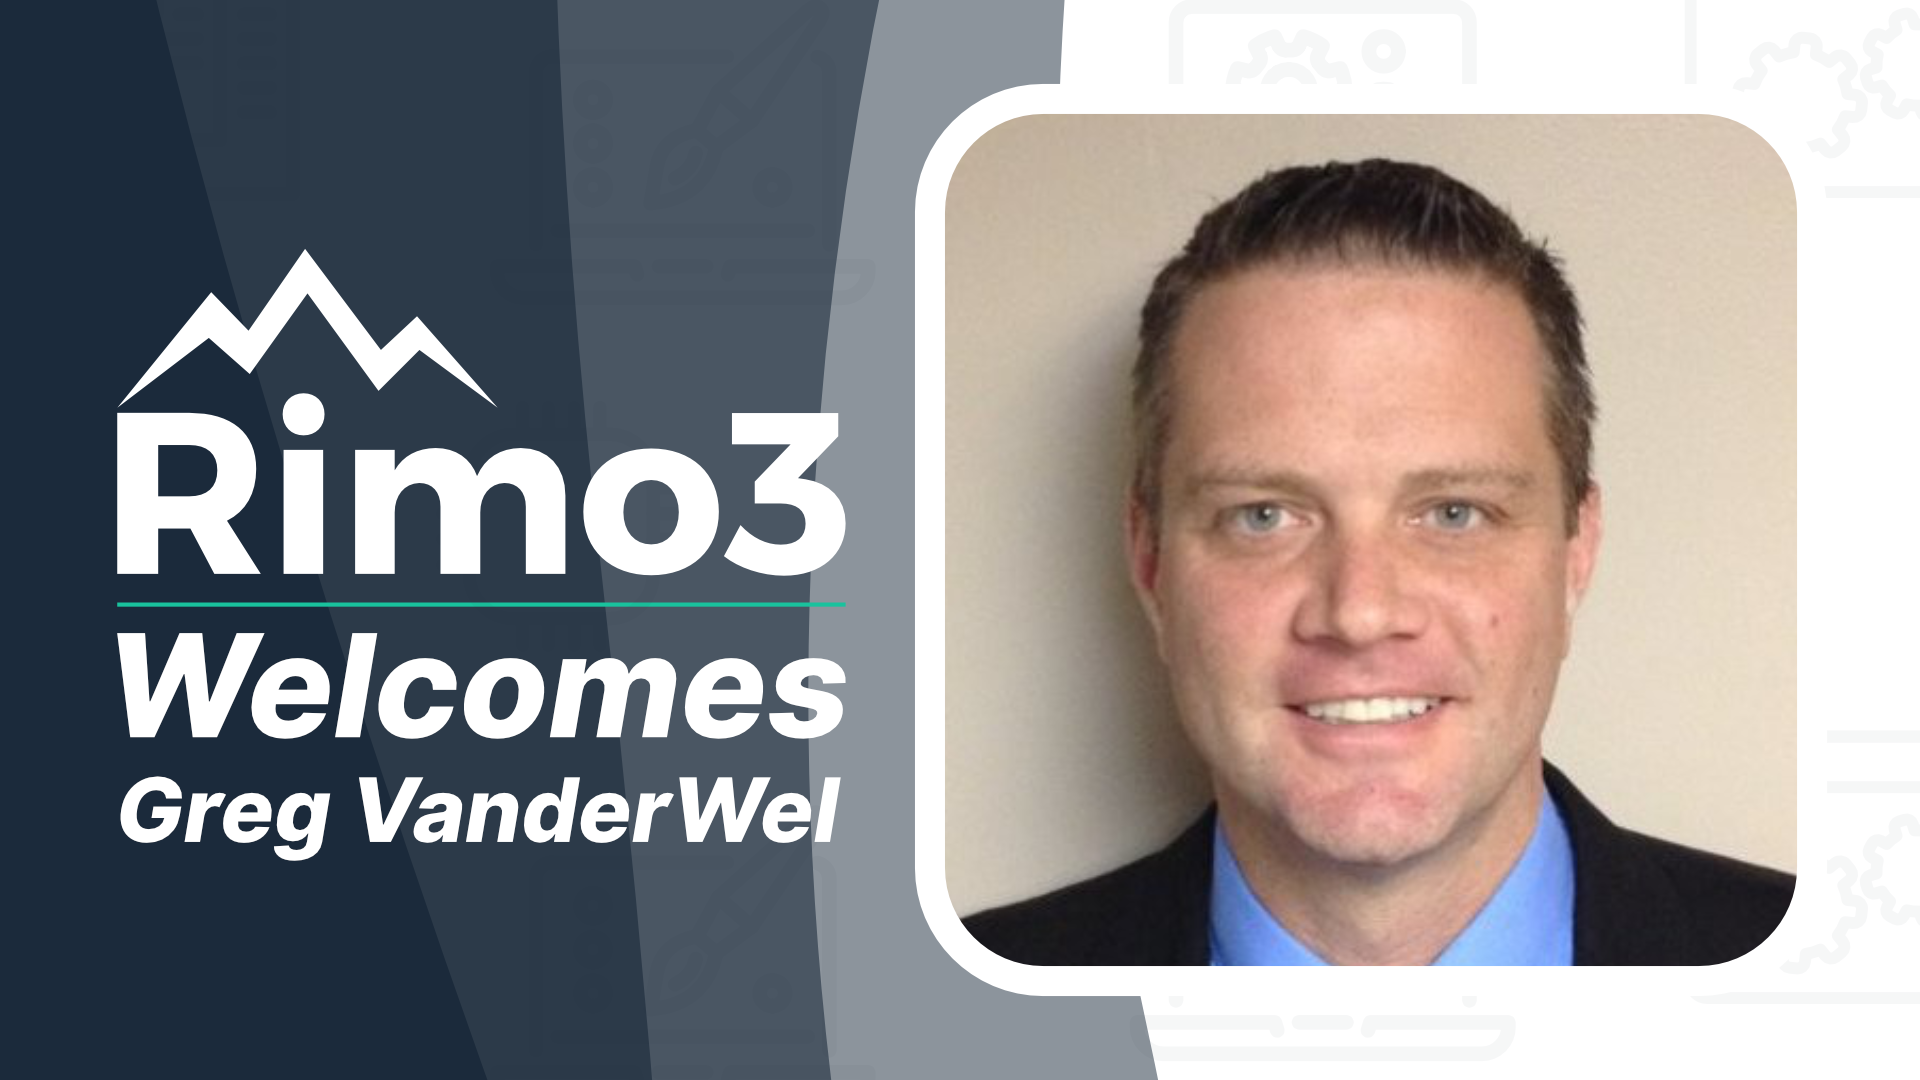 Greg VanderWel Joins North America Sales Team at Rimo3